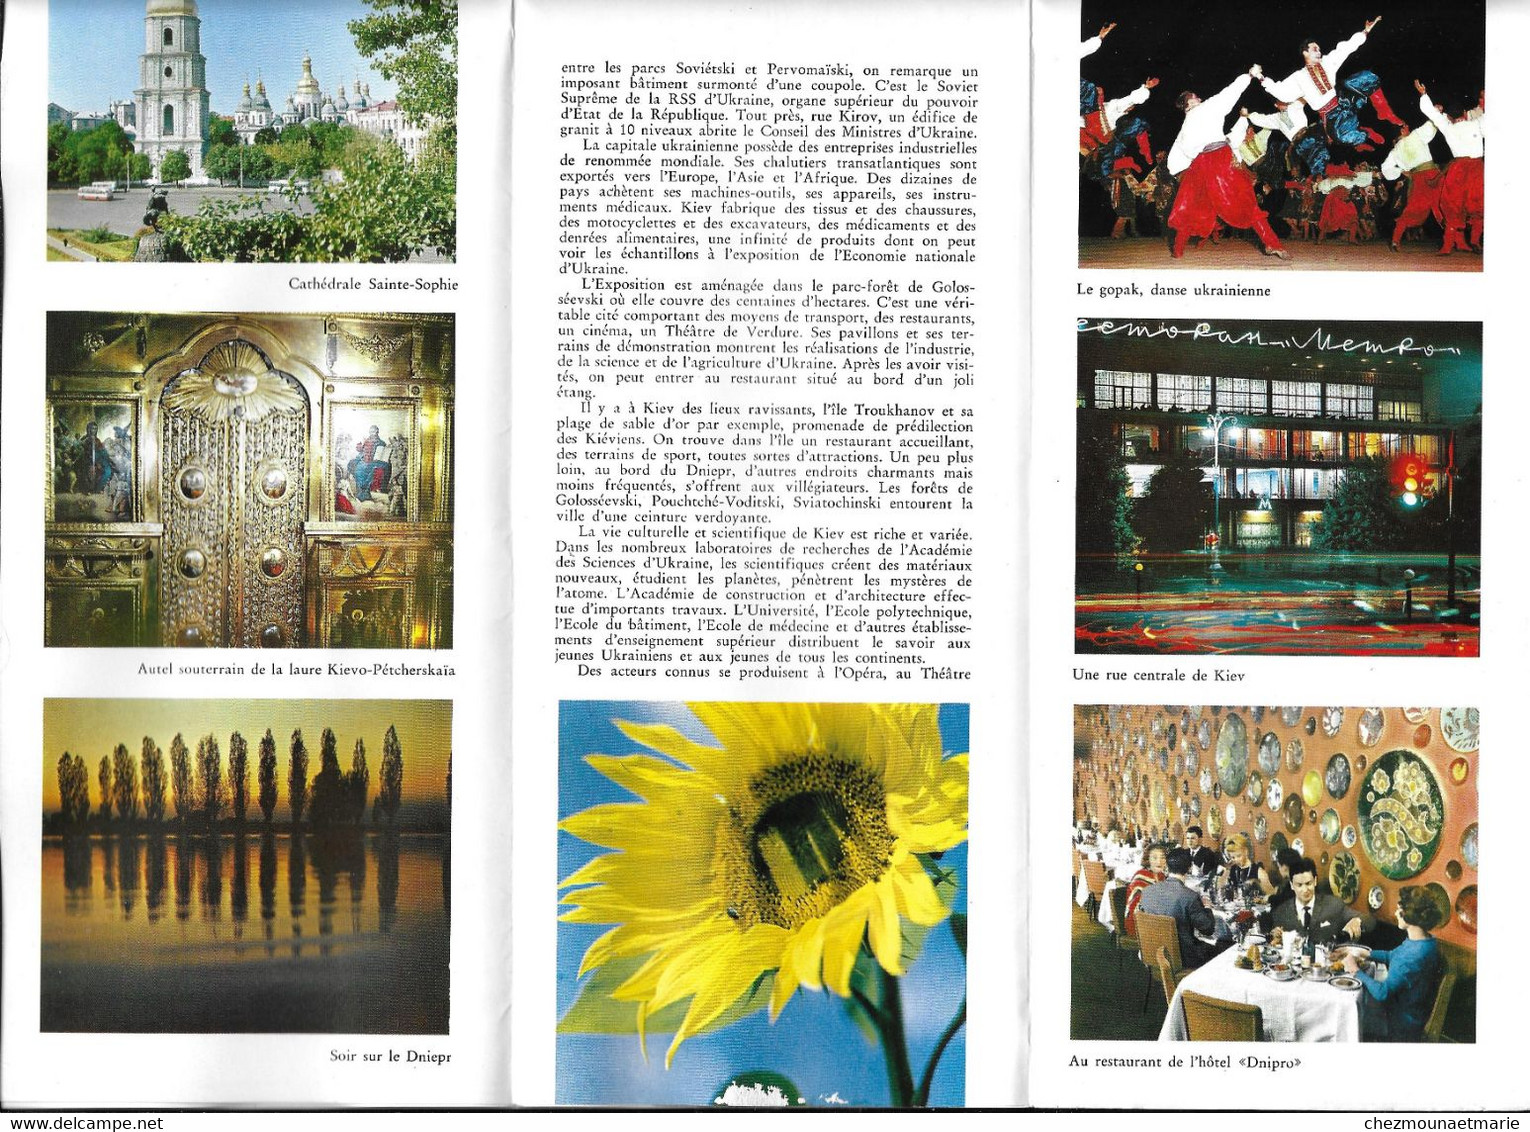 KIEV UKRAINE - DEPLIANT TOURISTIQUE - Tourism Brochures